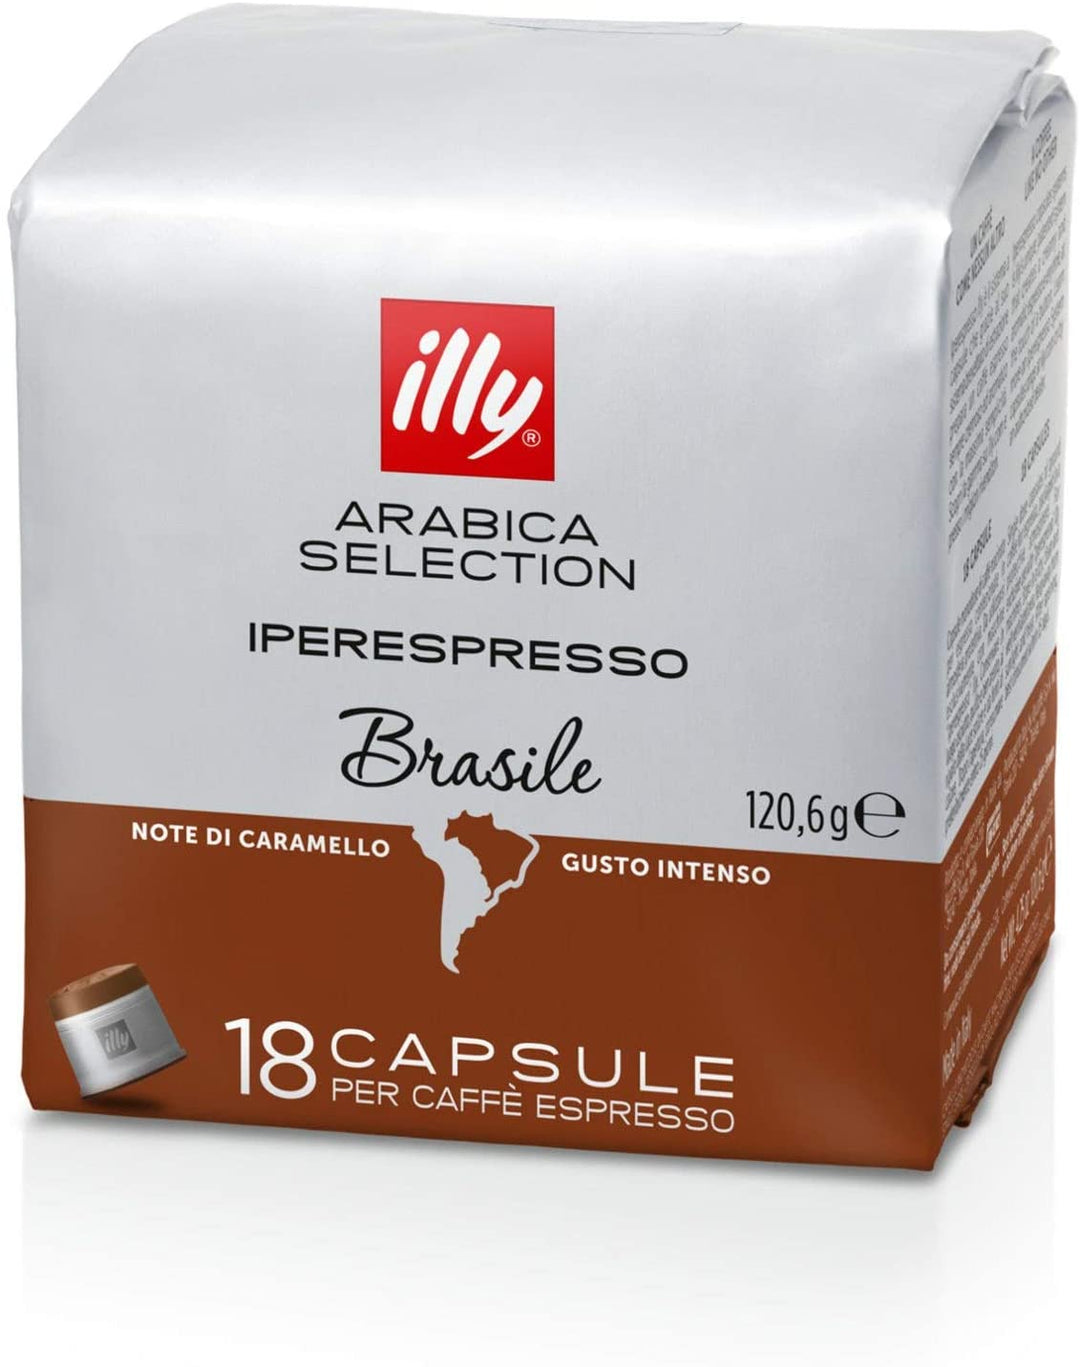 Arabica Selection Brazil Iperespresso coffee 18 cps